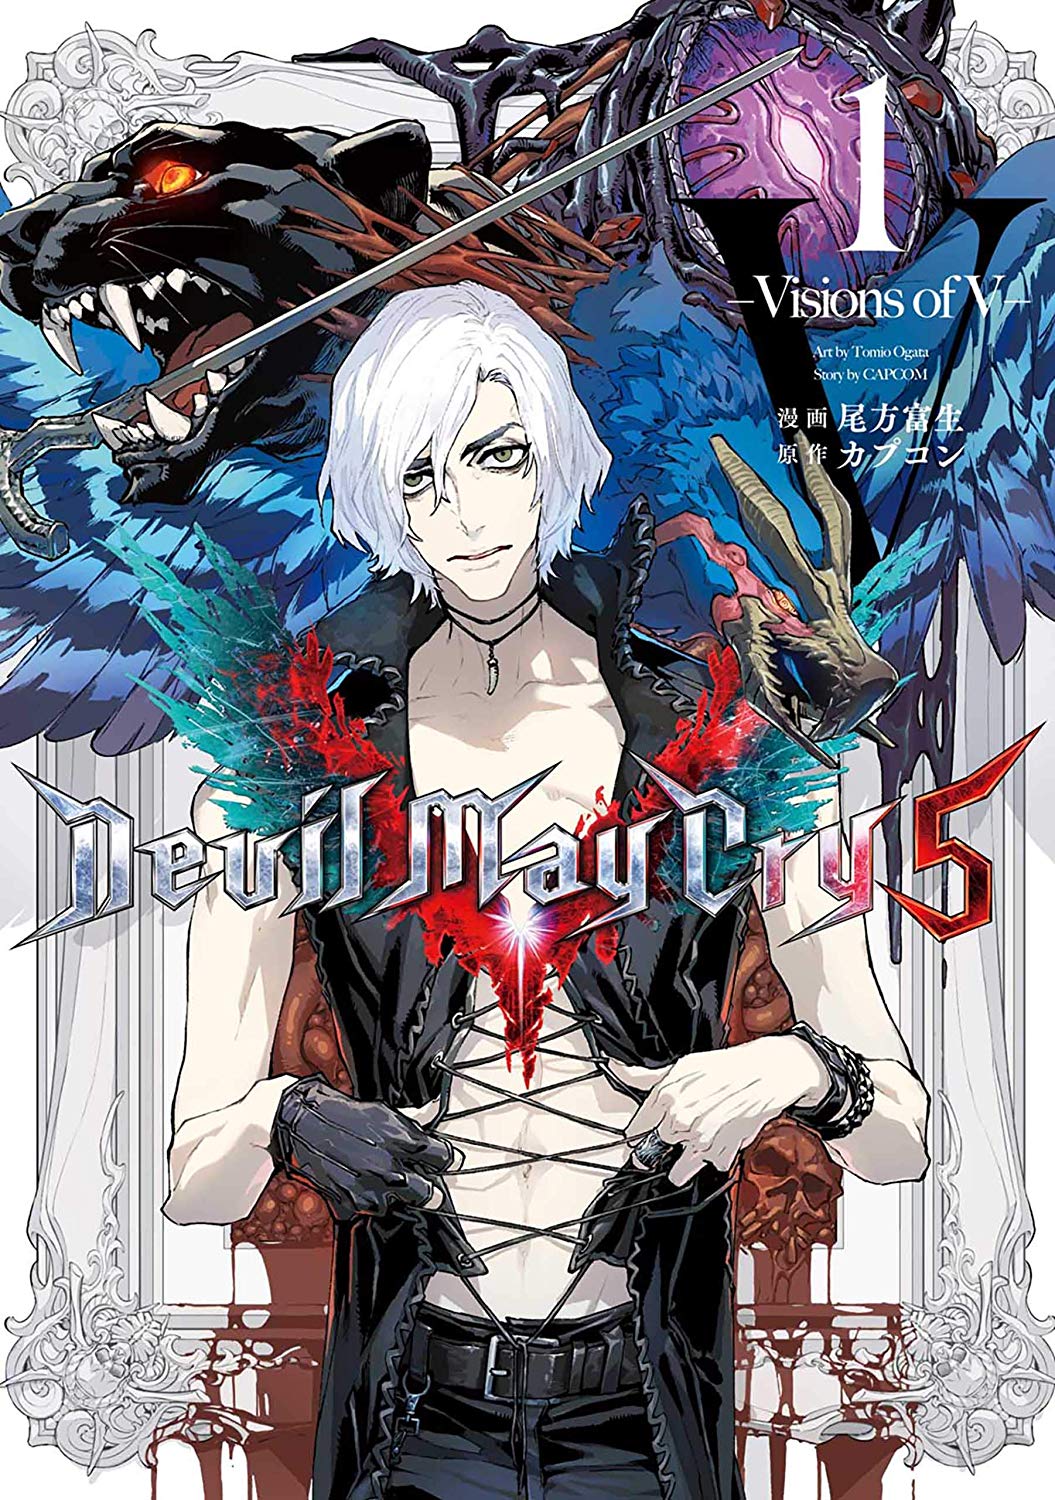 Devil May Cry 5 -Visions of V- Manga